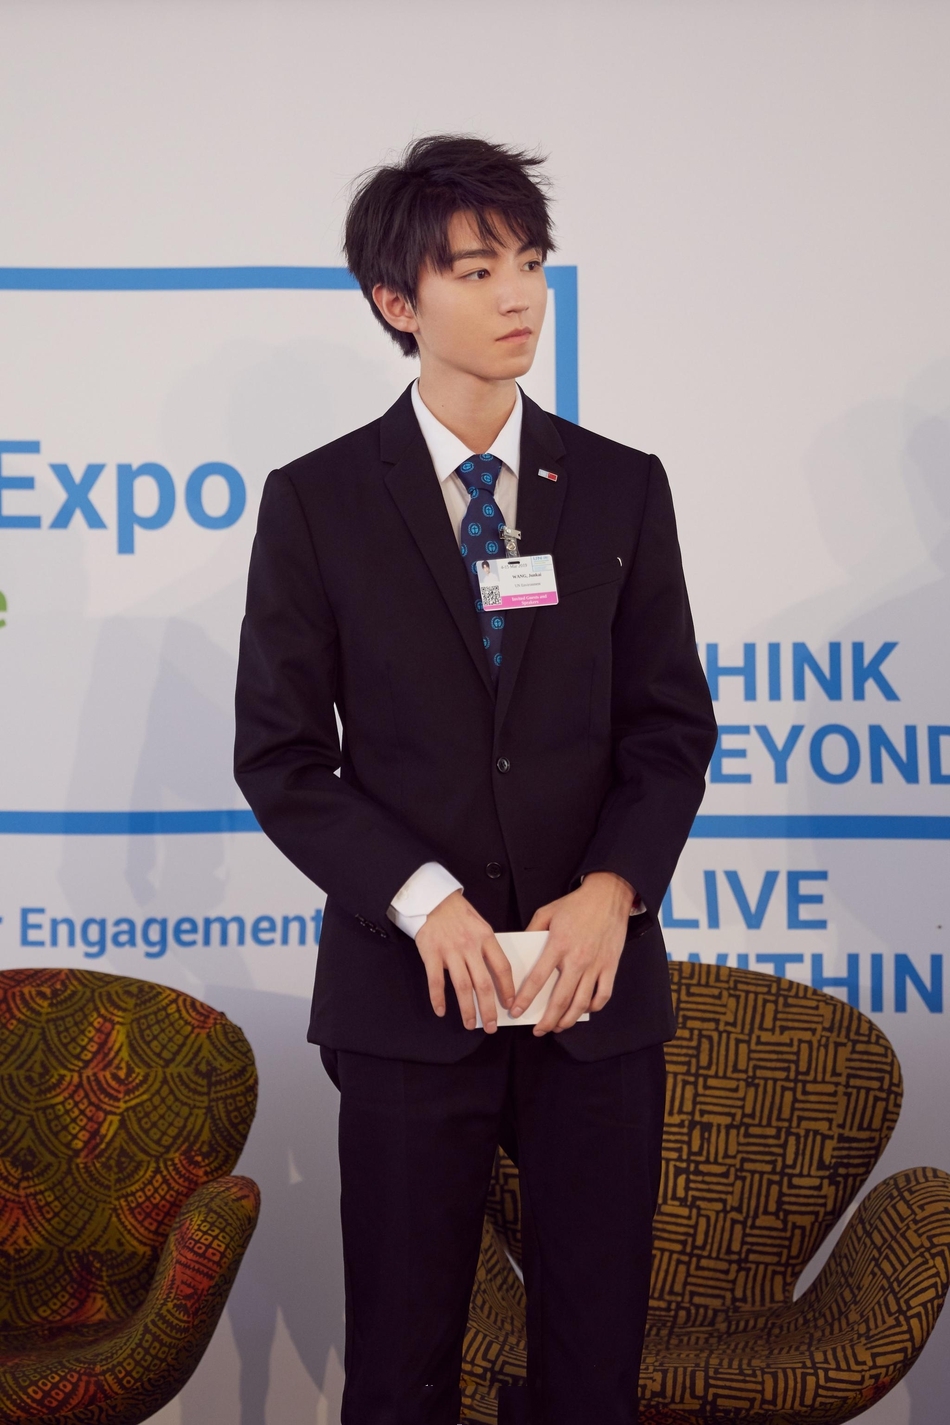 王俊凯联合国环境大会全英文演讲 西装凯青春洋溢